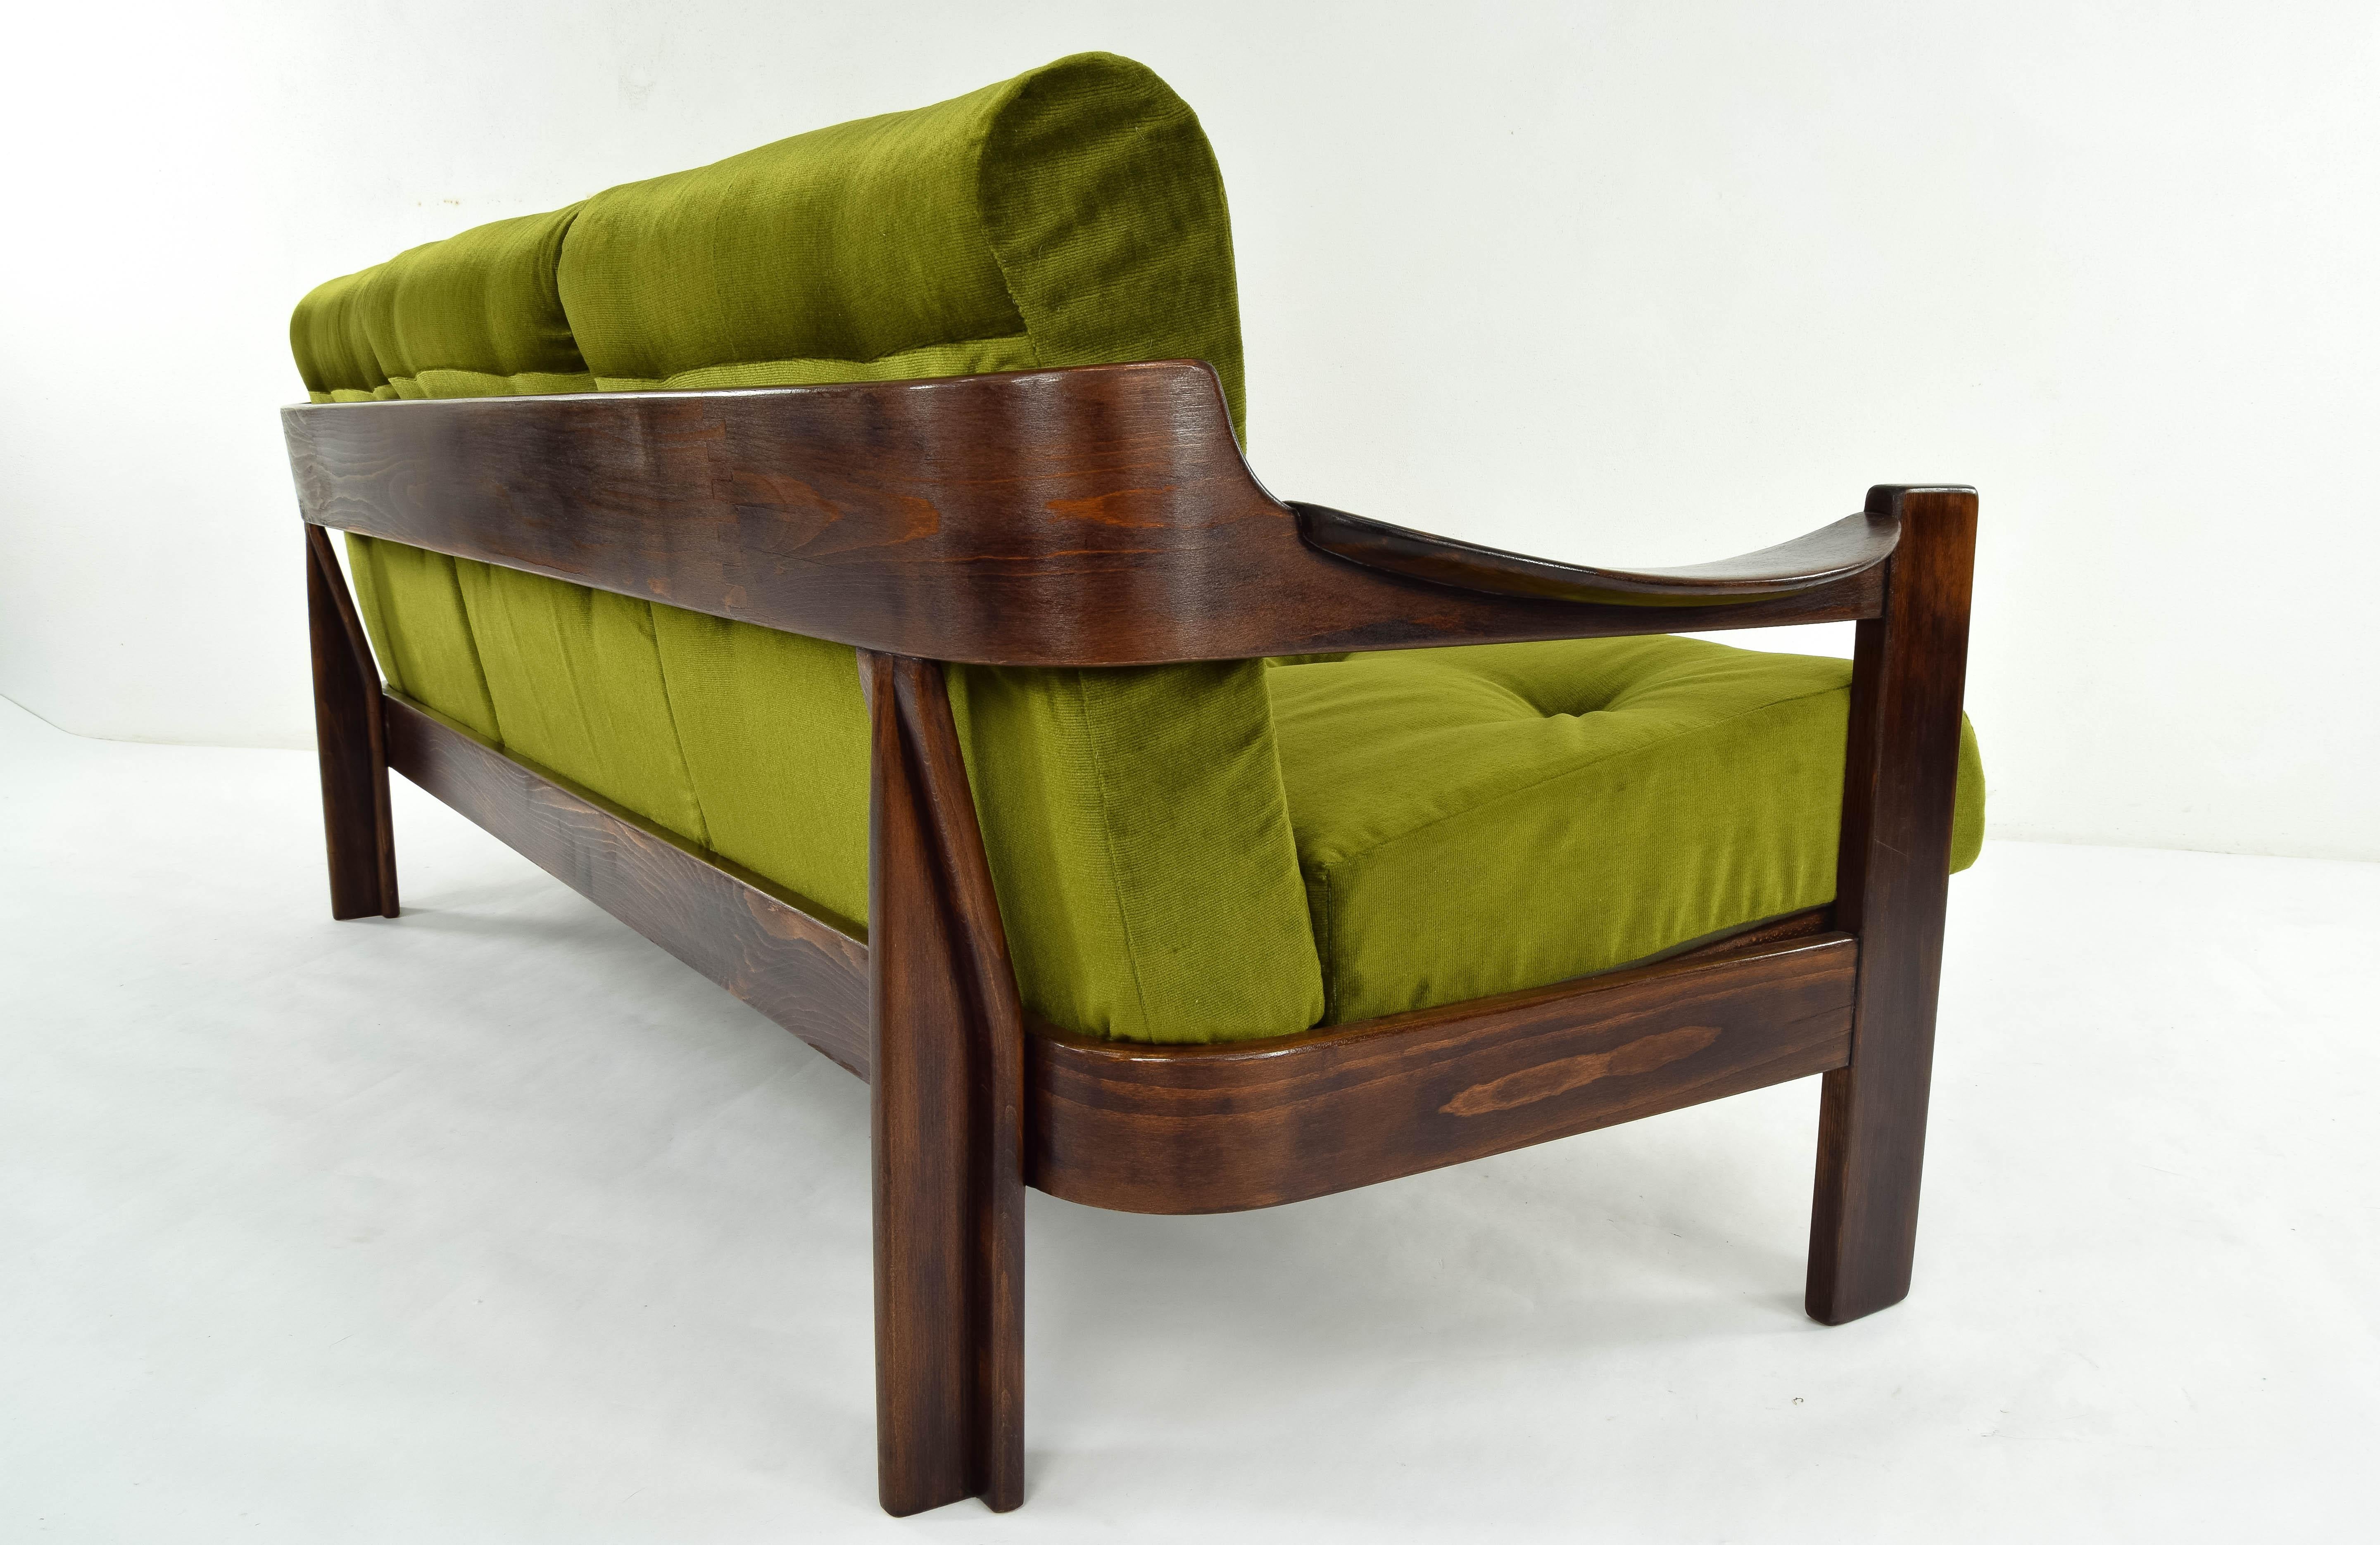 20th Century Mid-Century Modern Walnut Armchair and Sofa Set by AG Barcelona, Spain 1970